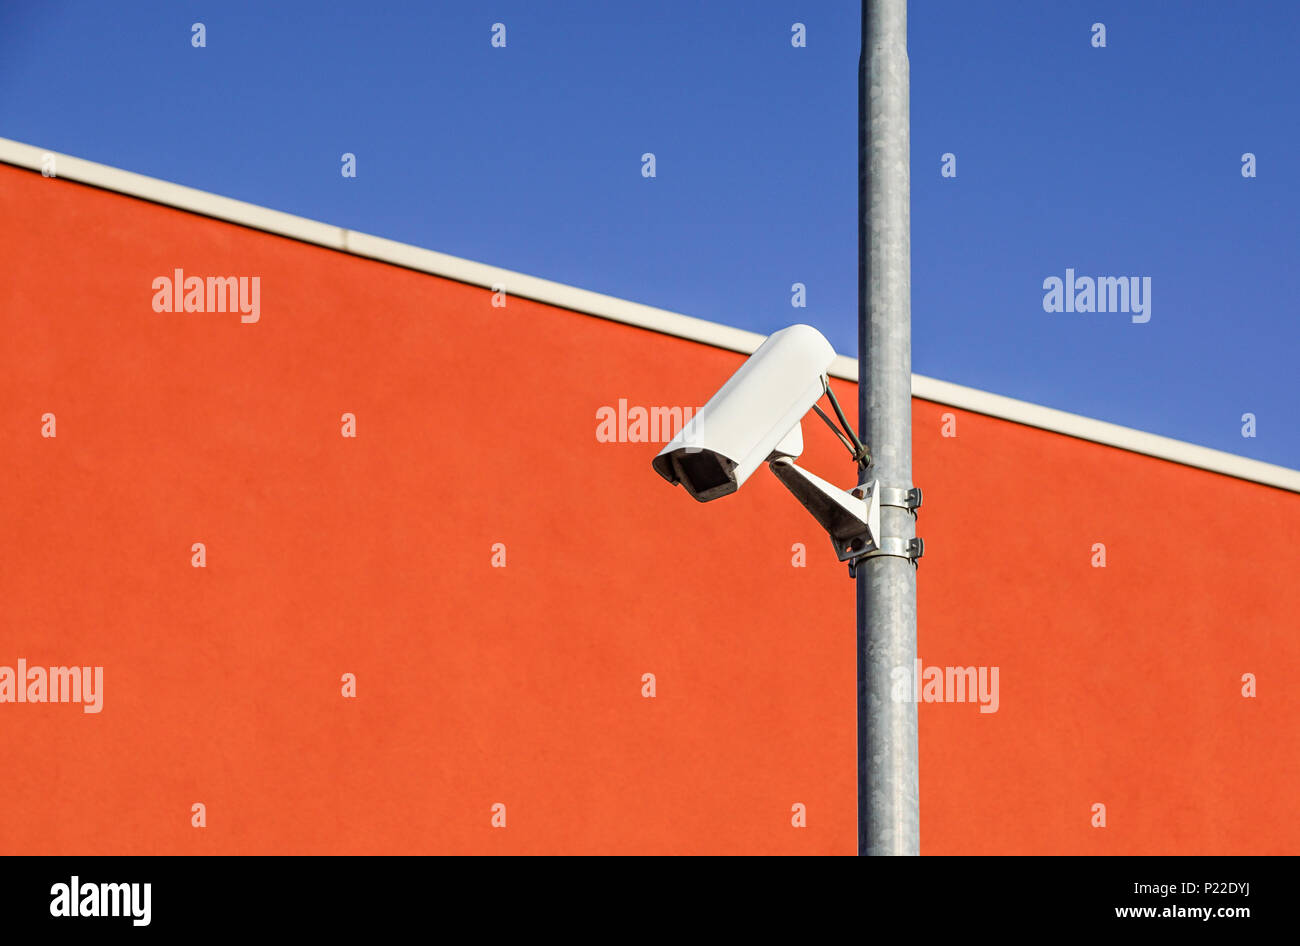 Sicherheit CCTV Kamera oder Überwachungssystem im Bürogebäude Stockfoto